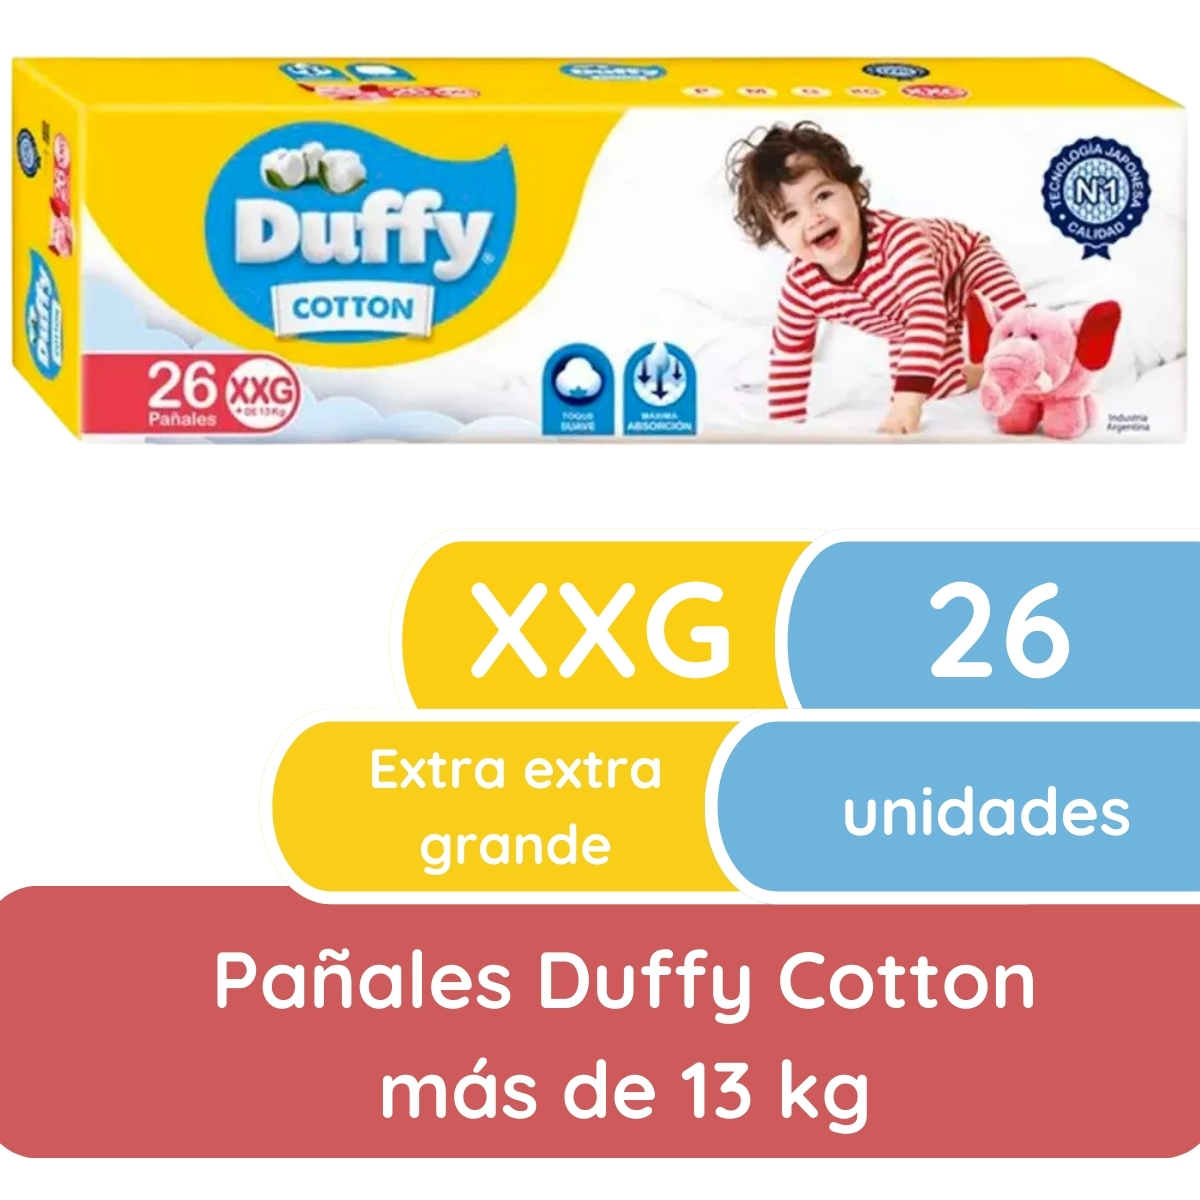 Imagen 1 de 4 de Pañales Duffy Cotton XXG x 26 unidades